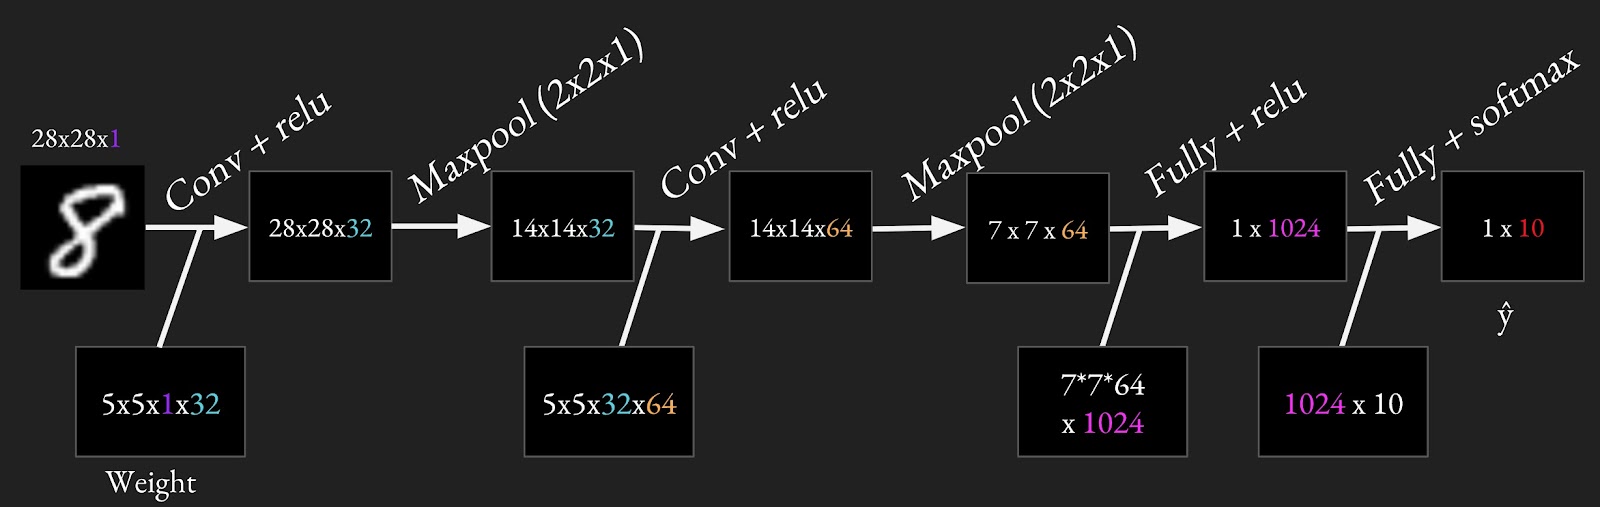 解决MNIST问题的示例ConvNet体系结构